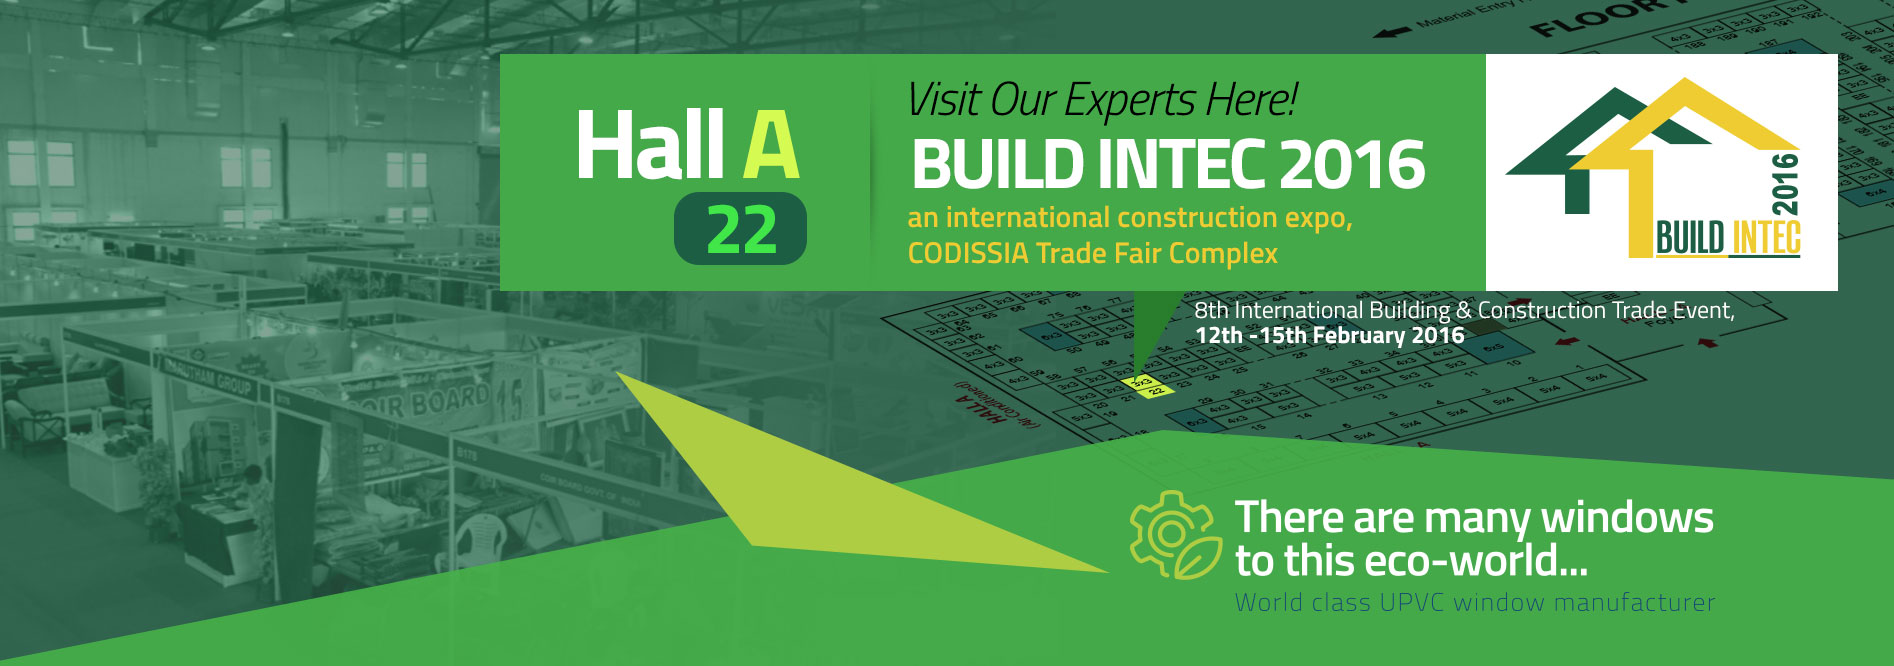 Build Intec 2016 Visit Our Experts